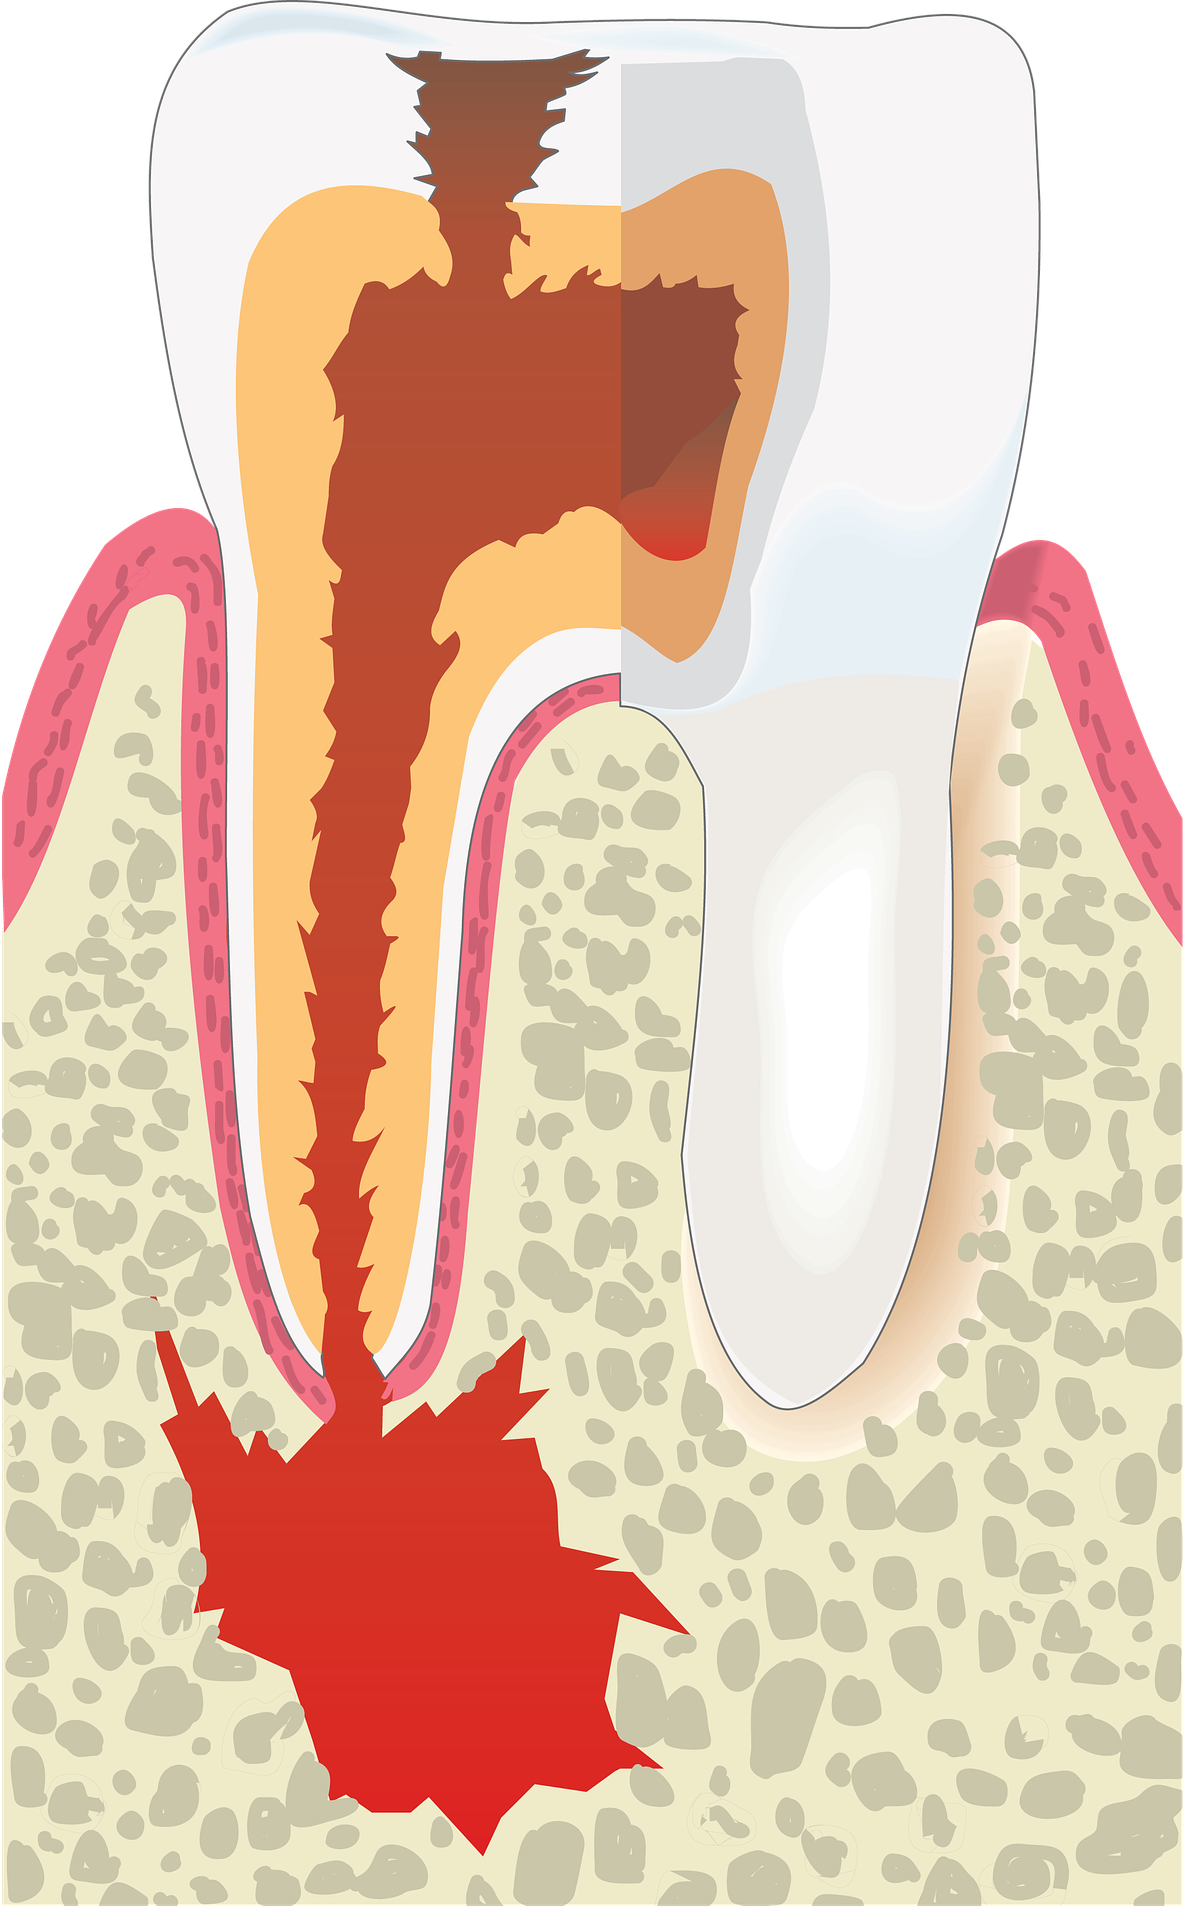 Root canal illustration - Mississauga Dentist - Bristol Dental